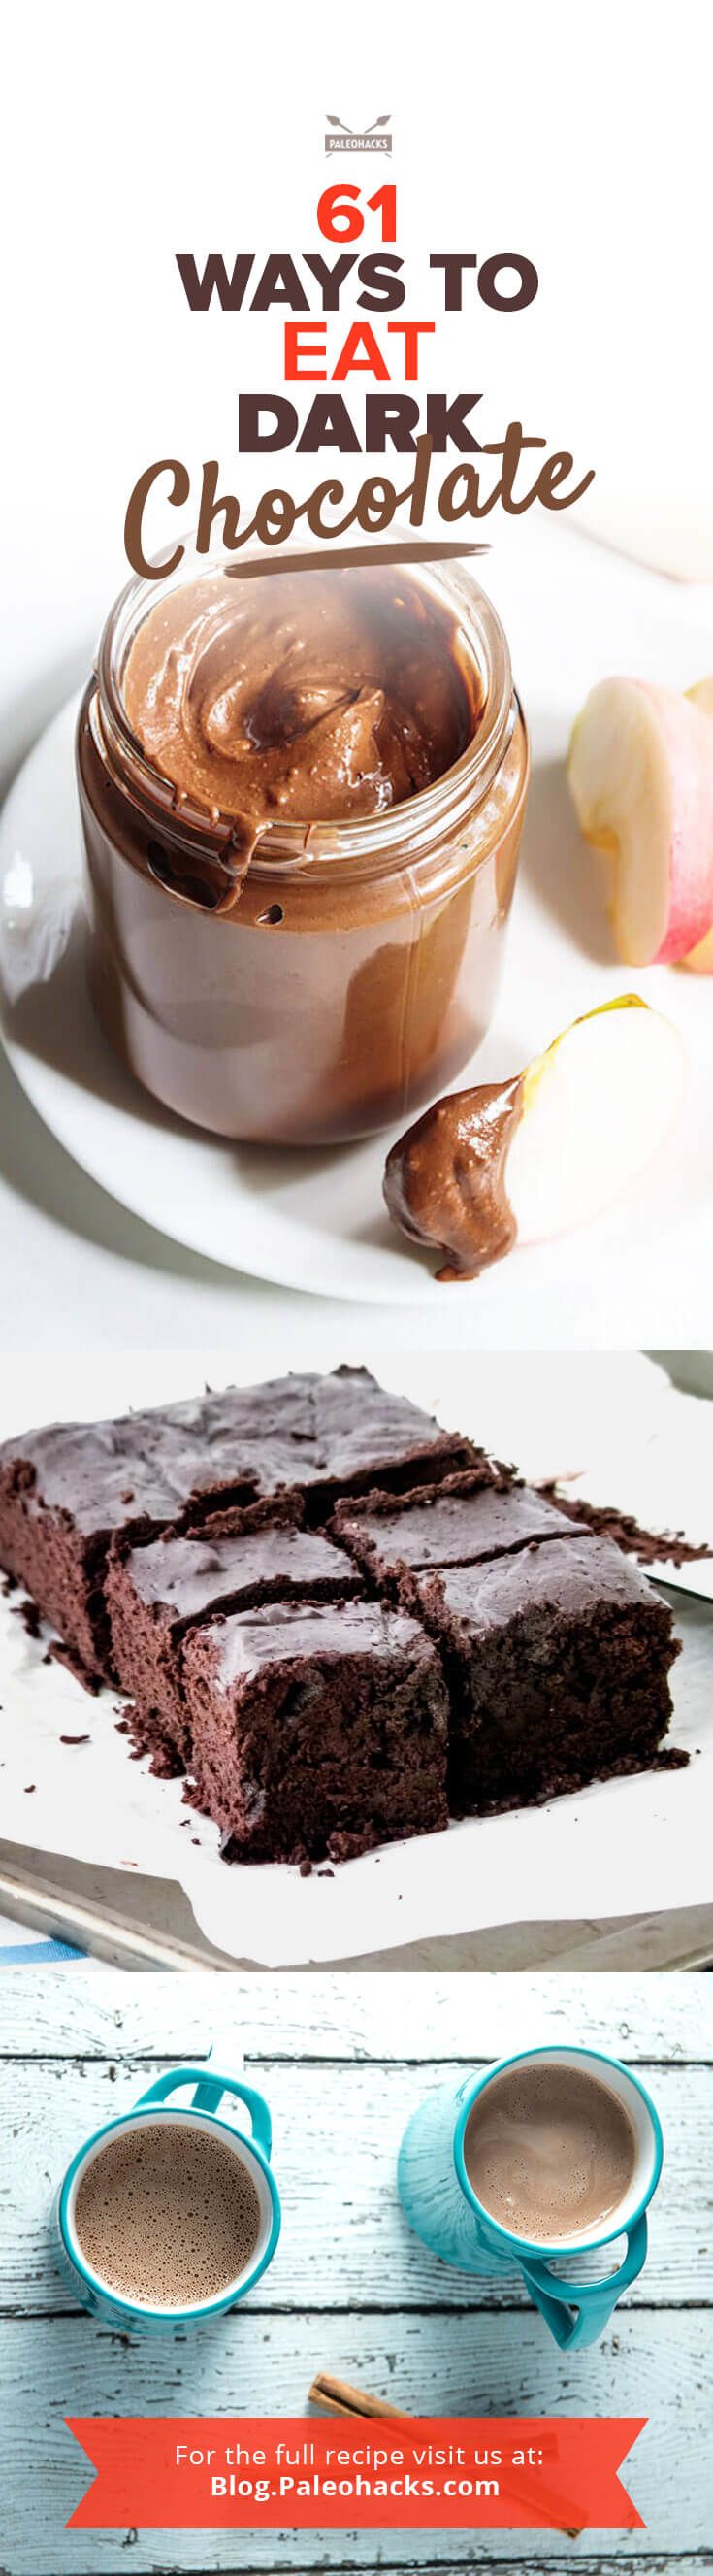 PIN-61-ways-to-eat-dark-chocolate